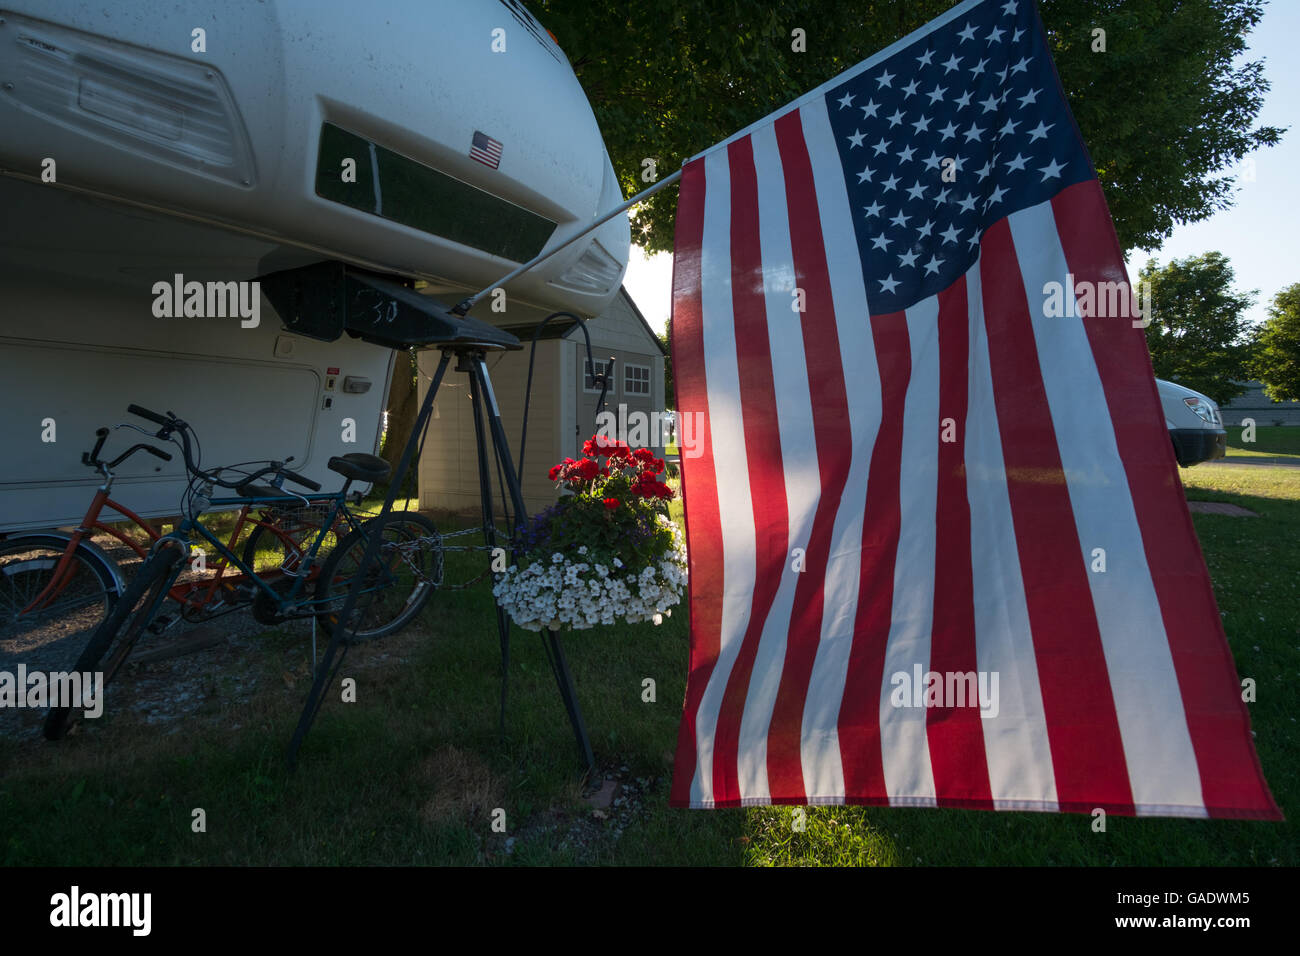 Una bandiera americana appesa dalla parte anteriore di una quinta ruota rimorchio in un camper Park downtown Montague, Michigan, Stati Uniti d'America Foto Stock